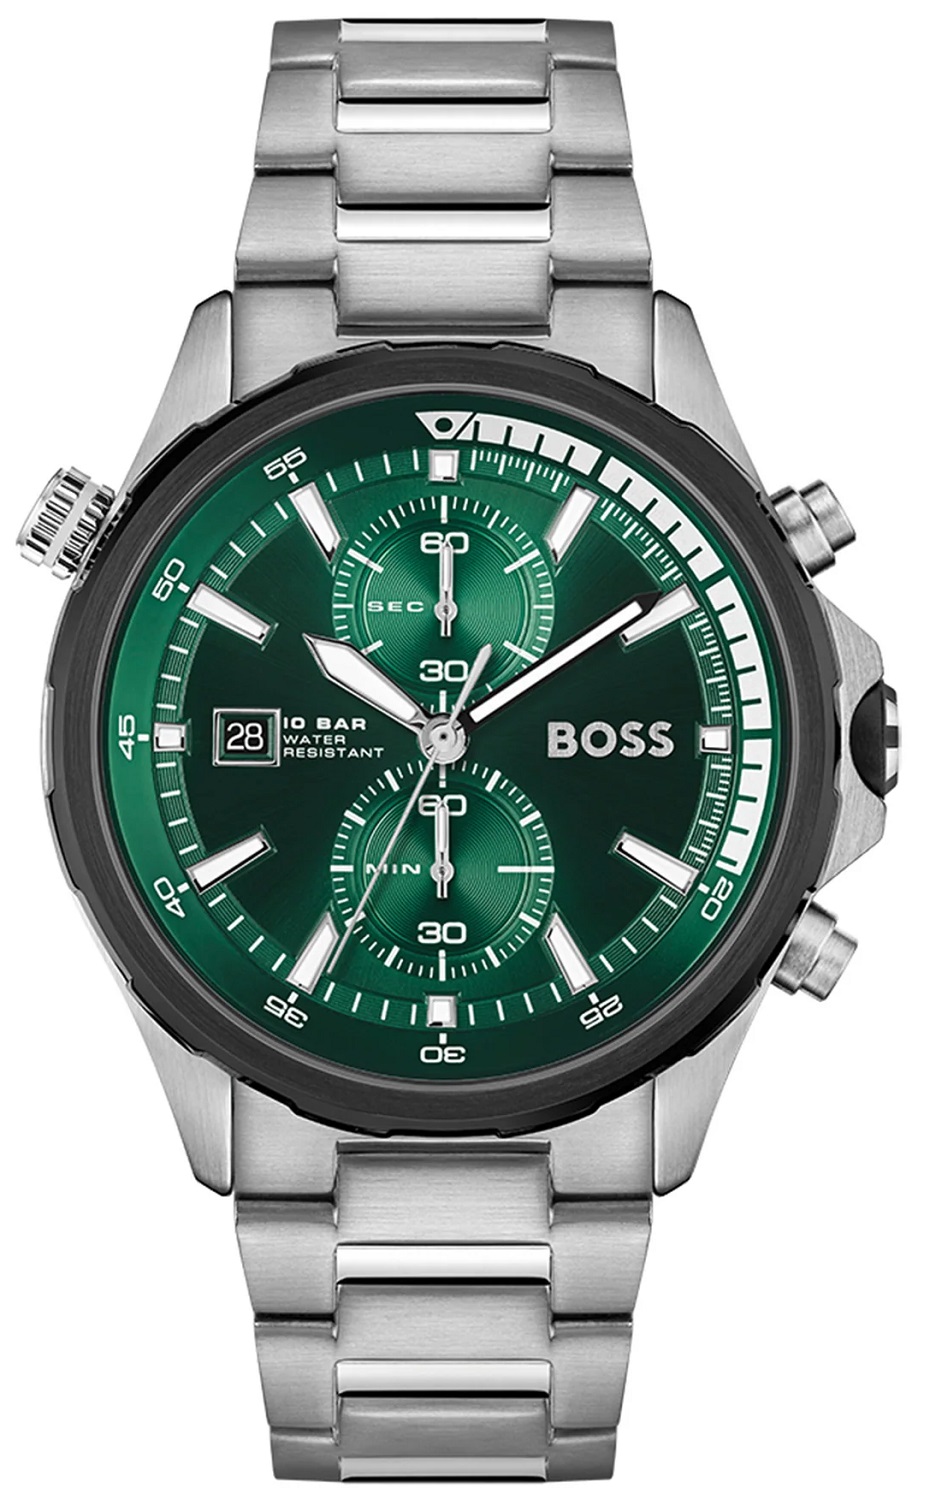   Hugo Boss HB1513930  